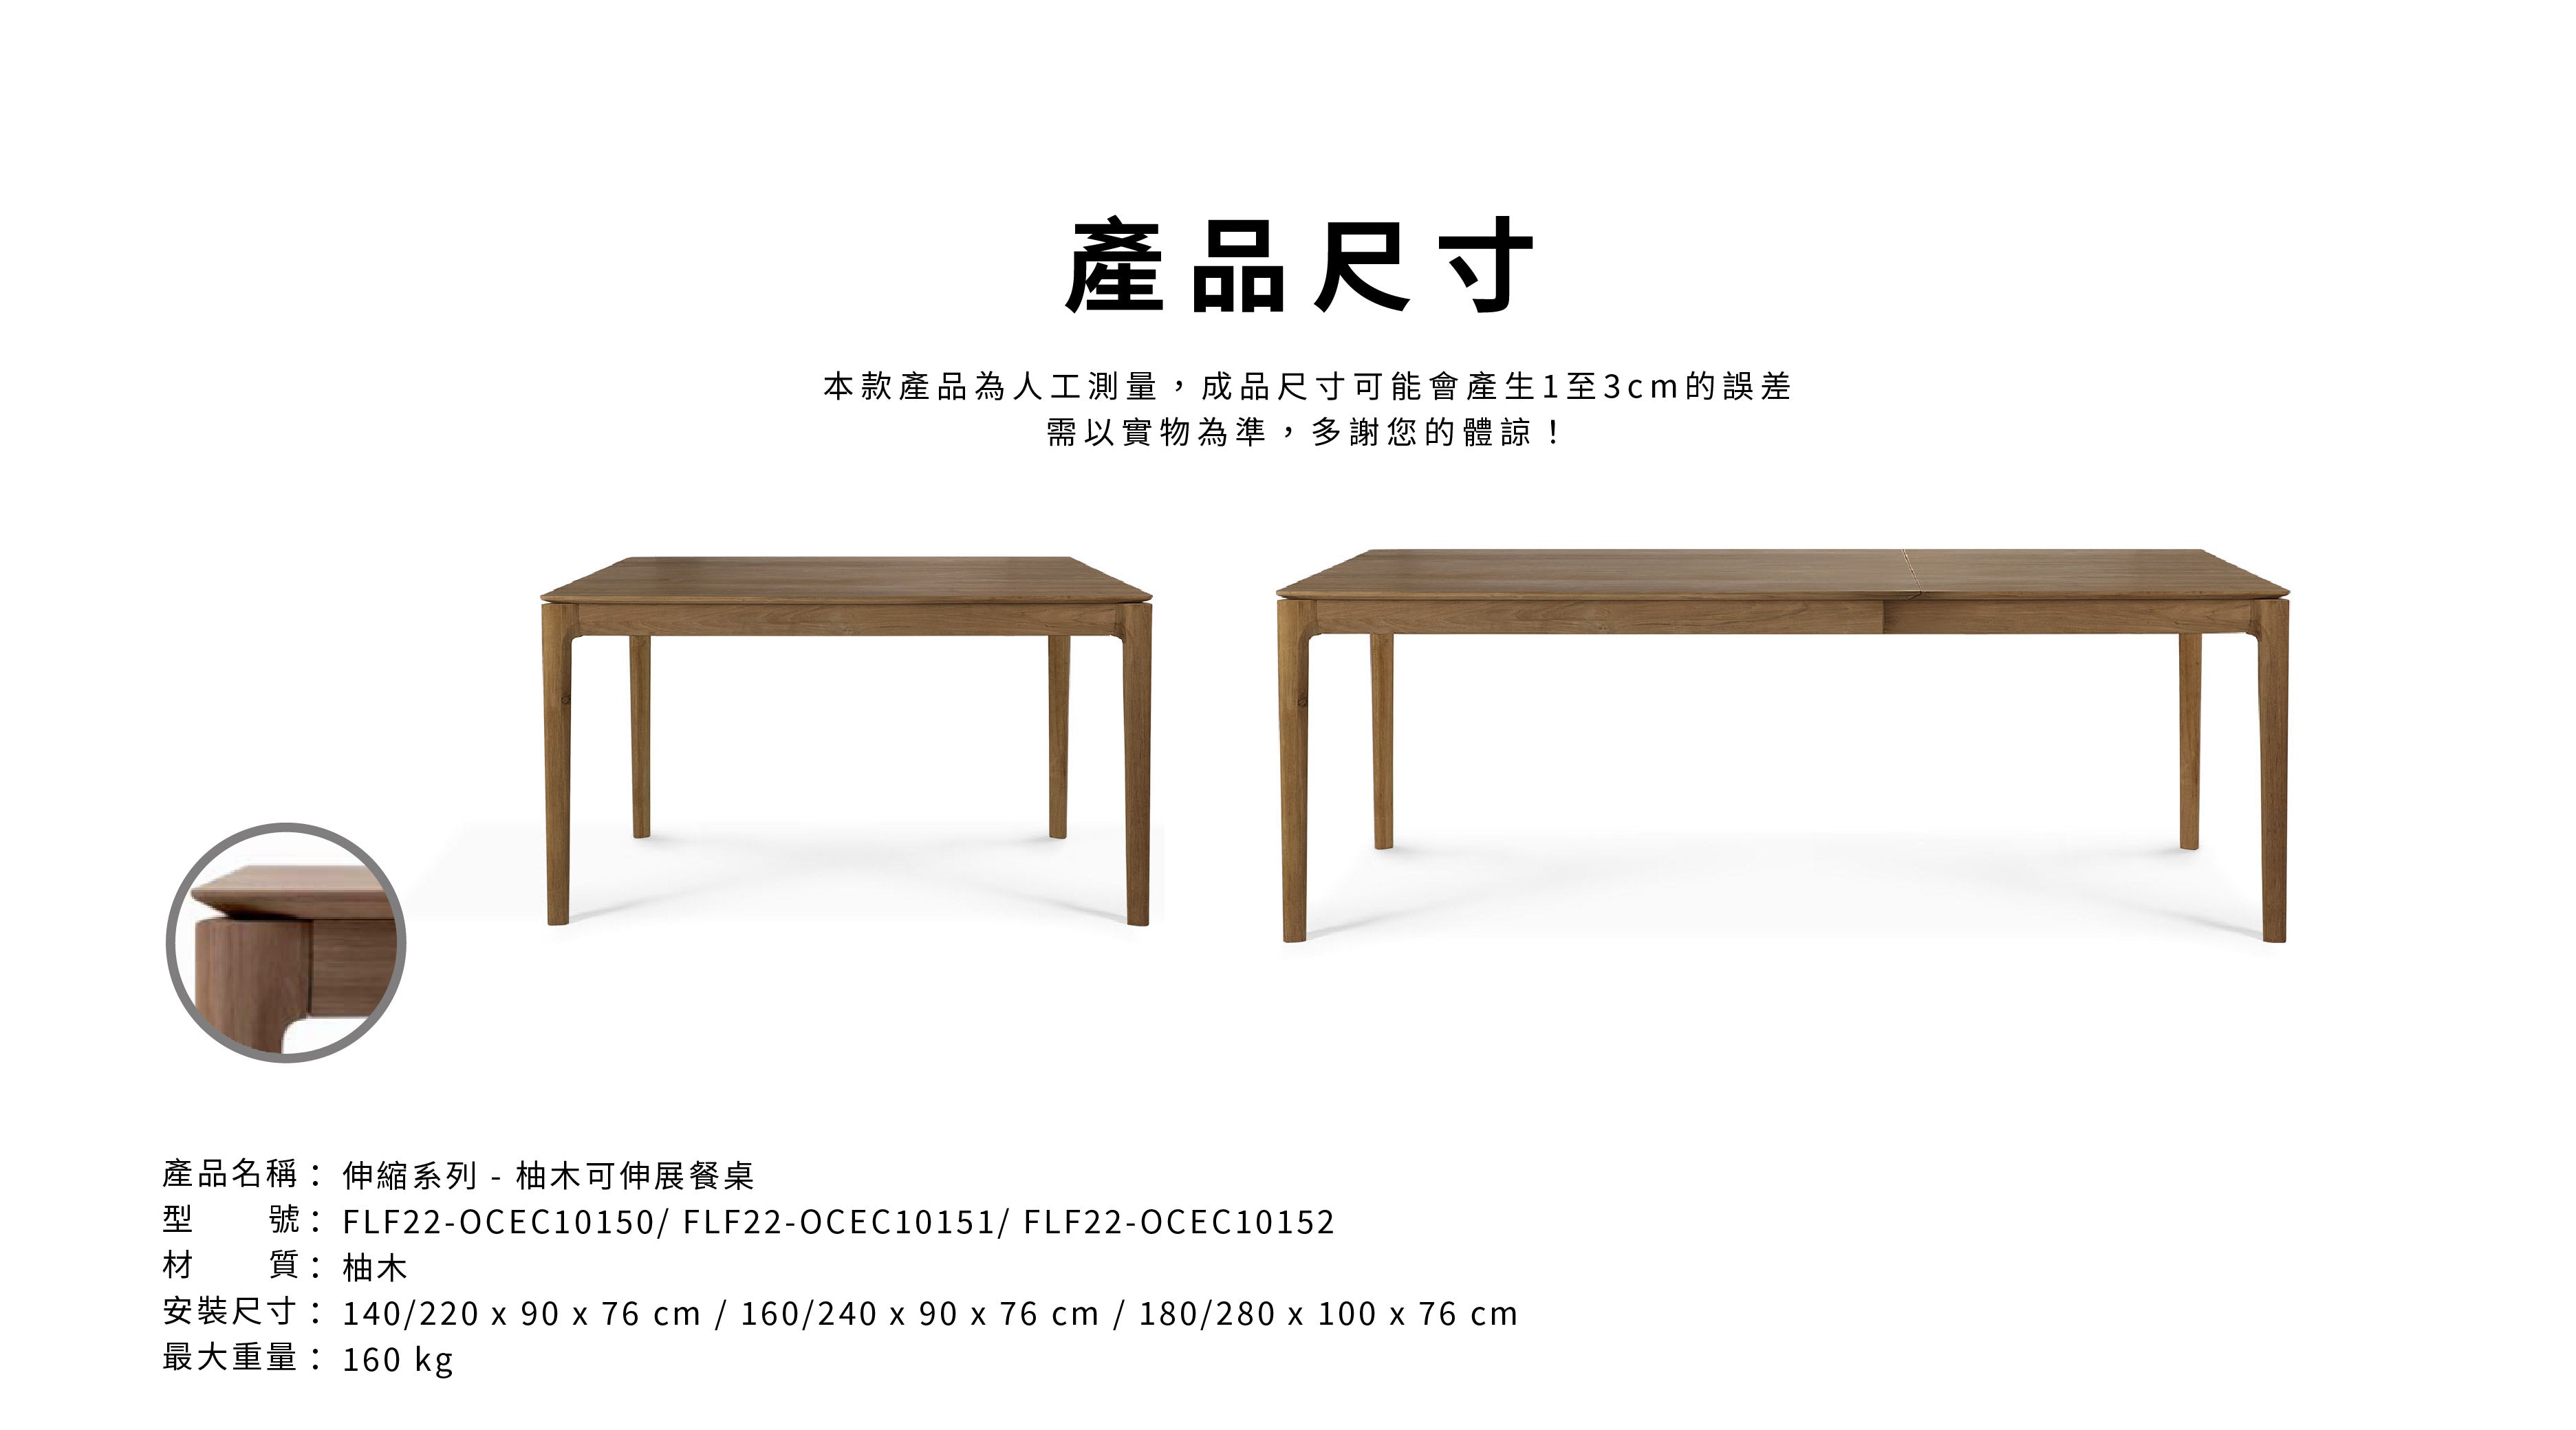 比利時原裝進口實木傢俬 - 伸縮系列 - Bok系列柚木可伸縮餐桌